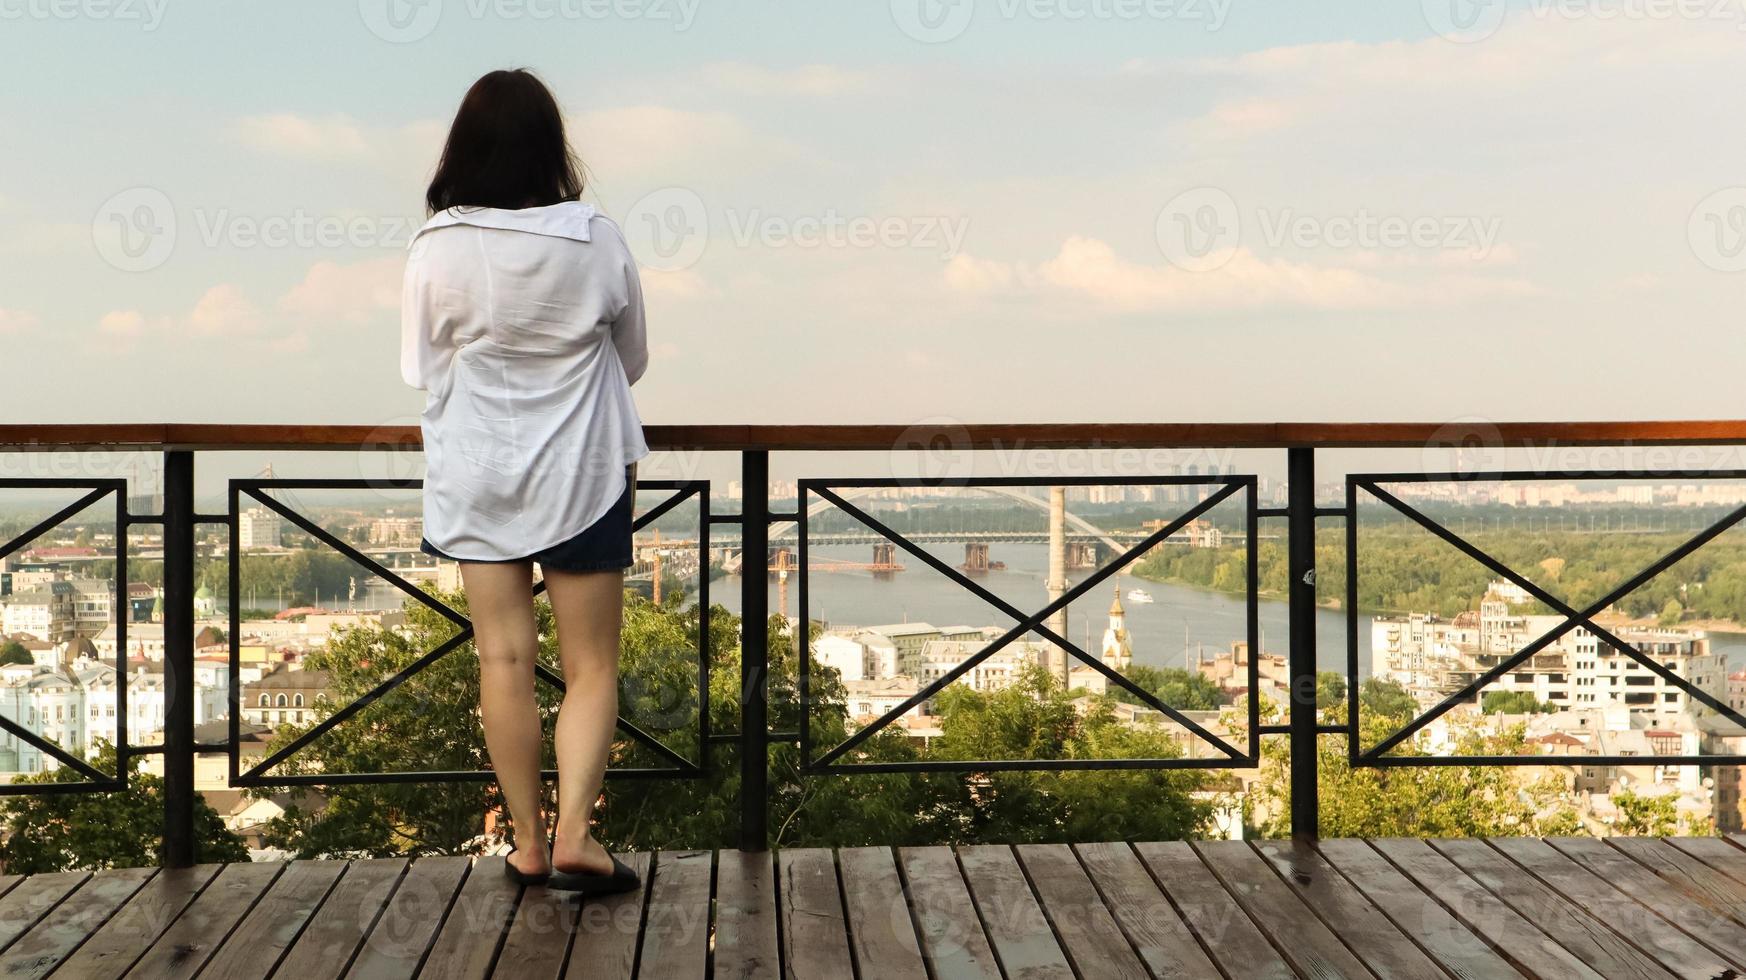 bakifrån av en ung kvinna i vit skjorta, en brunettresenär tittar på stadsbilden en solig dag från en hög kulle med ett observationsdäck för turister. årgång foto